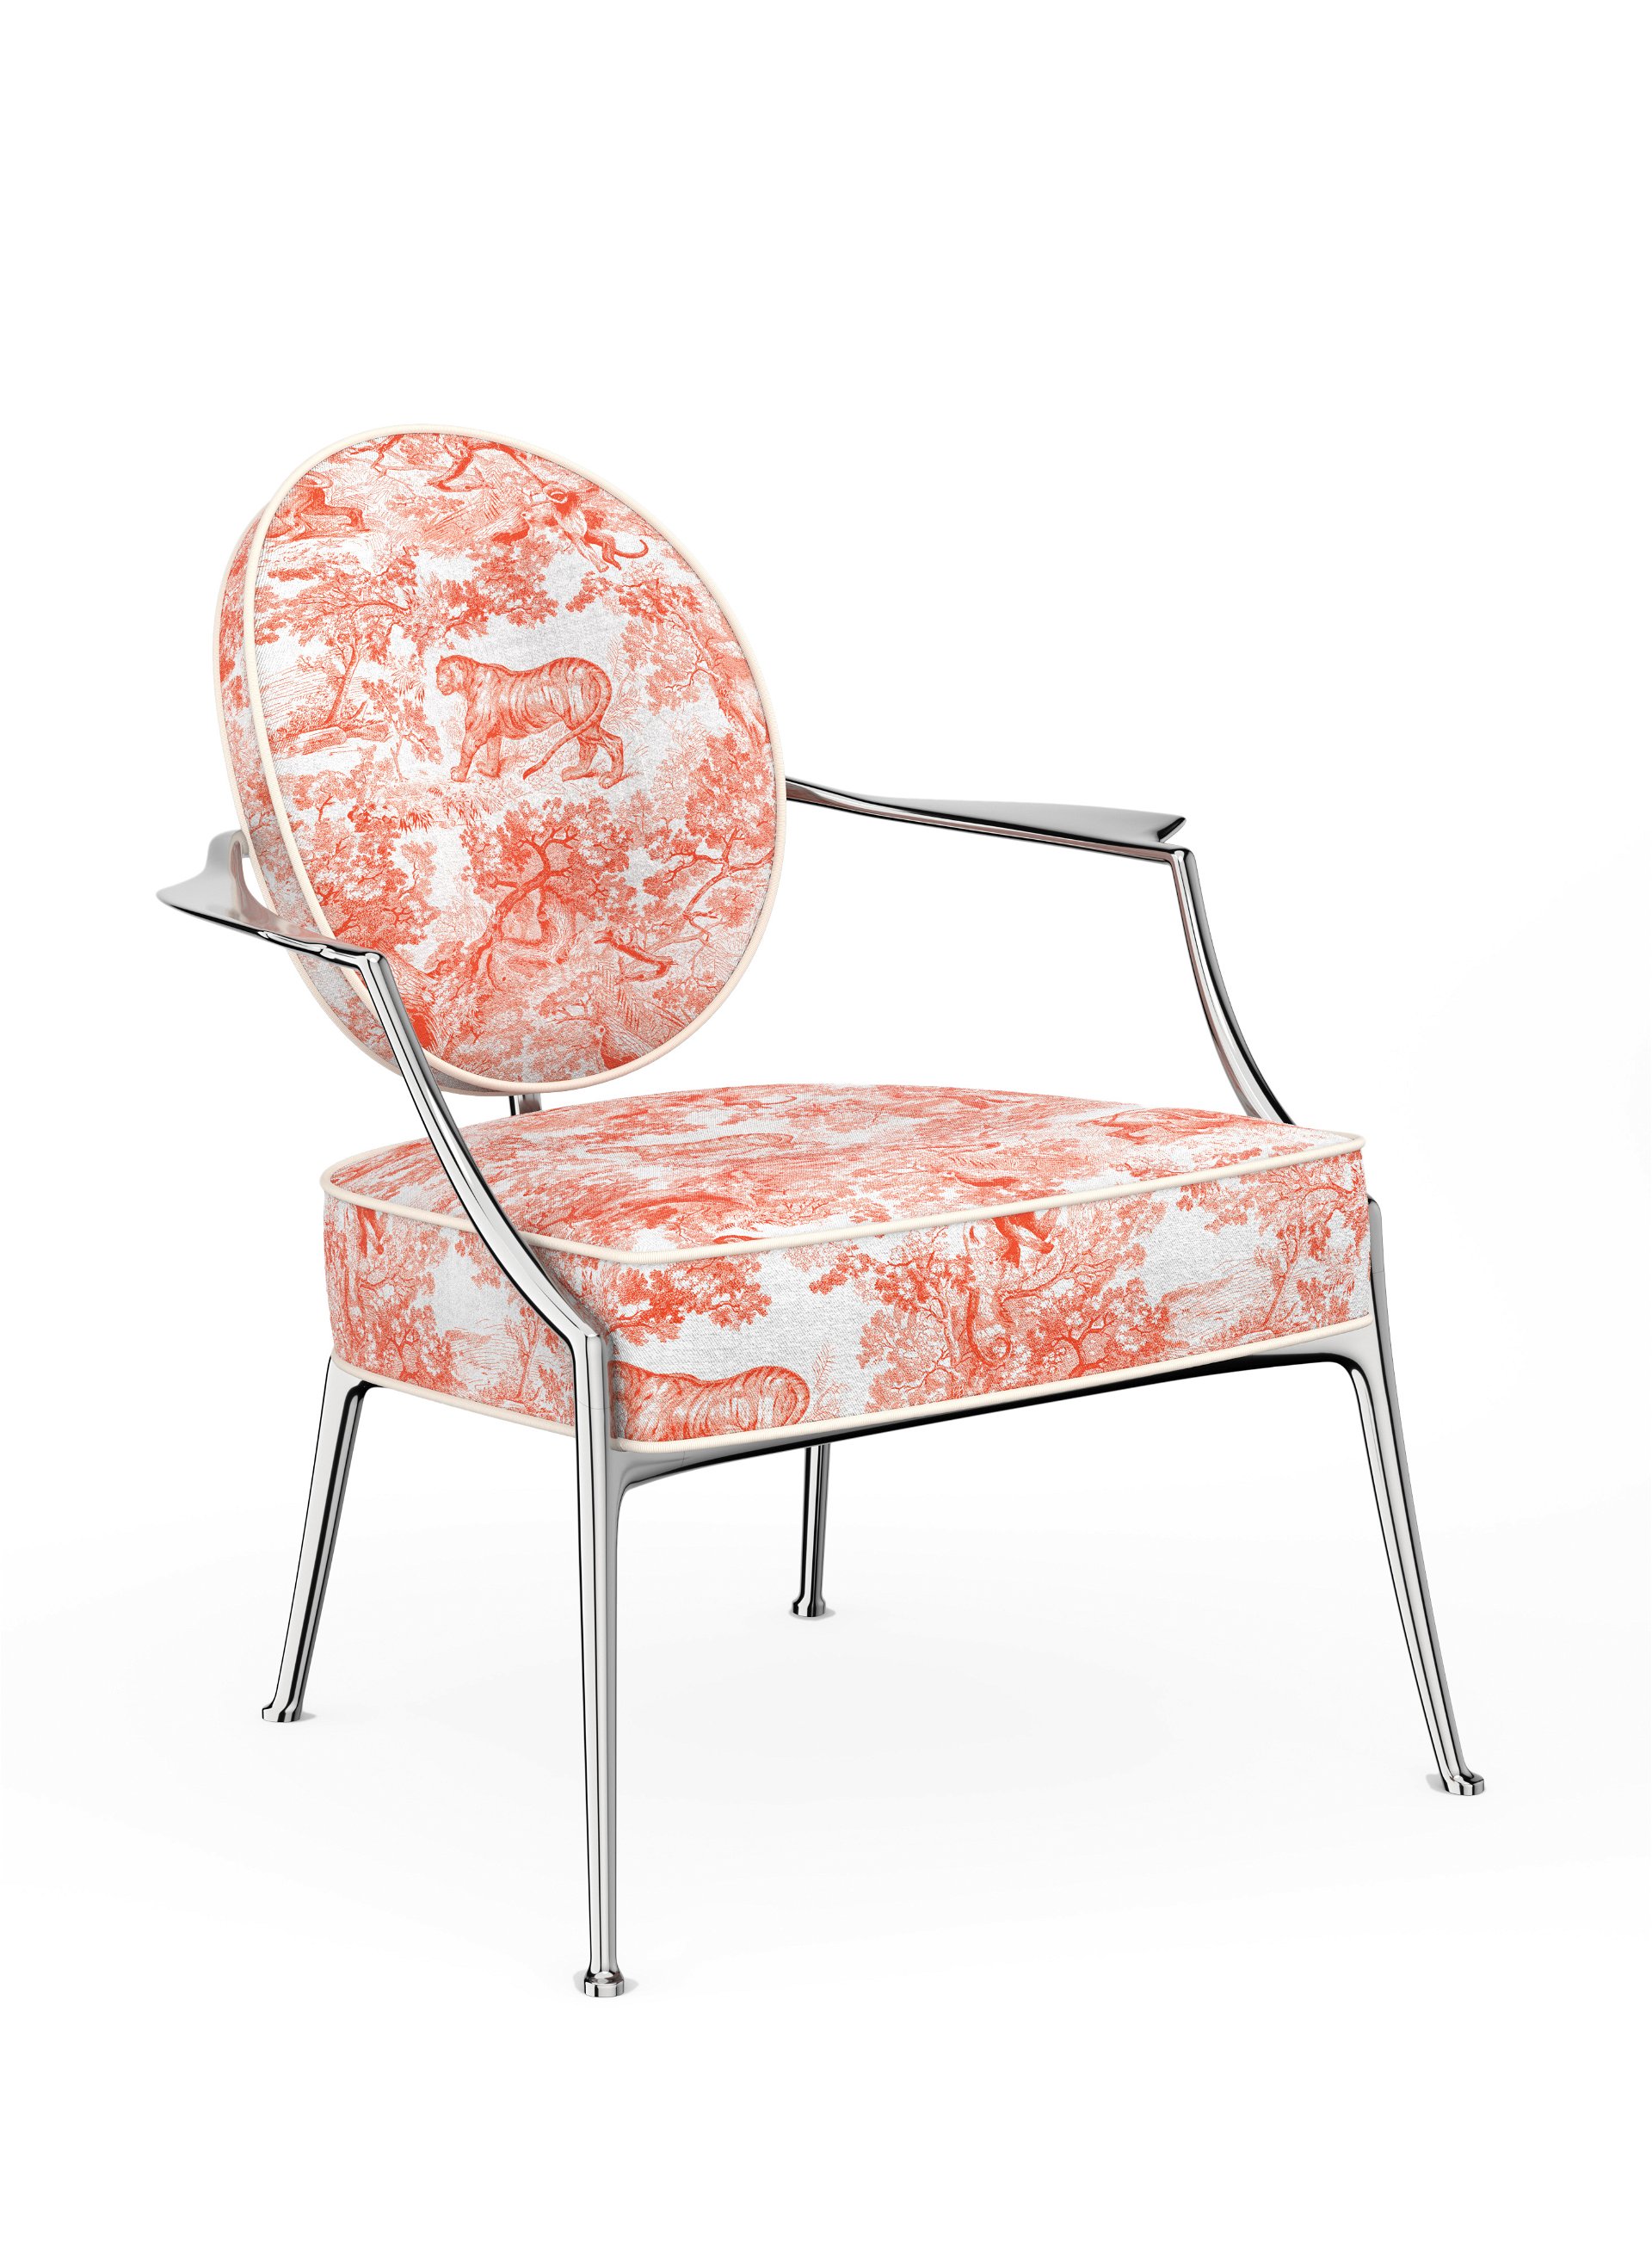 Dieses Jahr von Philippe Starck mit dem klassischen Toile-de-Jouy-Muster neu interpretiert: der »Medaillon-Chair« von Dior. dior.com